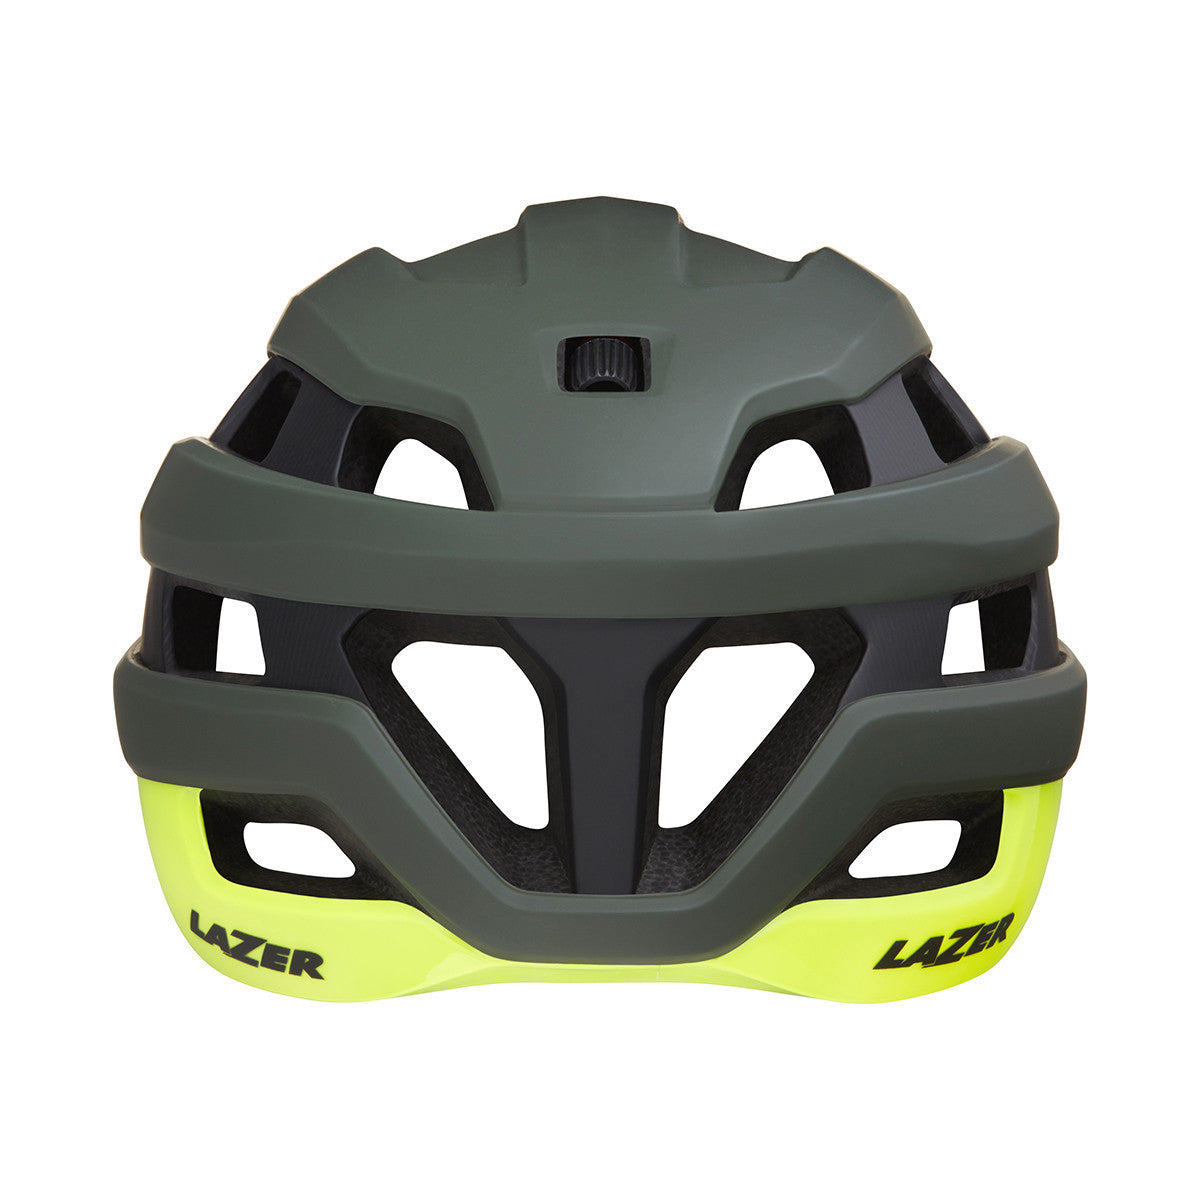 Lazer Sphere fietshelm groen/geel